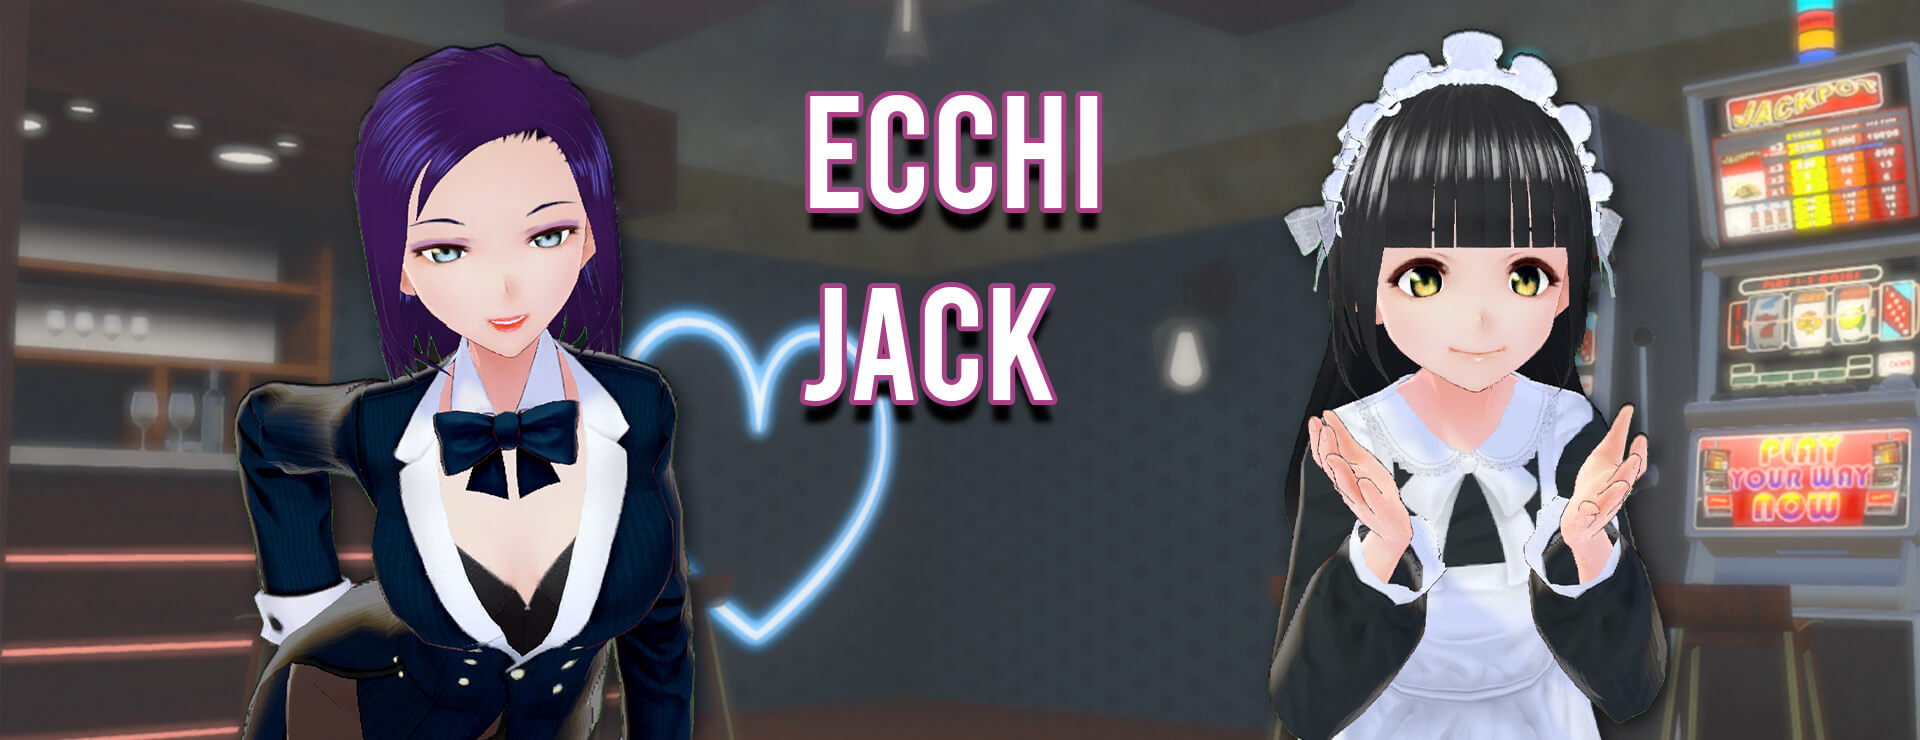 Ecchi Jack - Zwanglos  Spiel